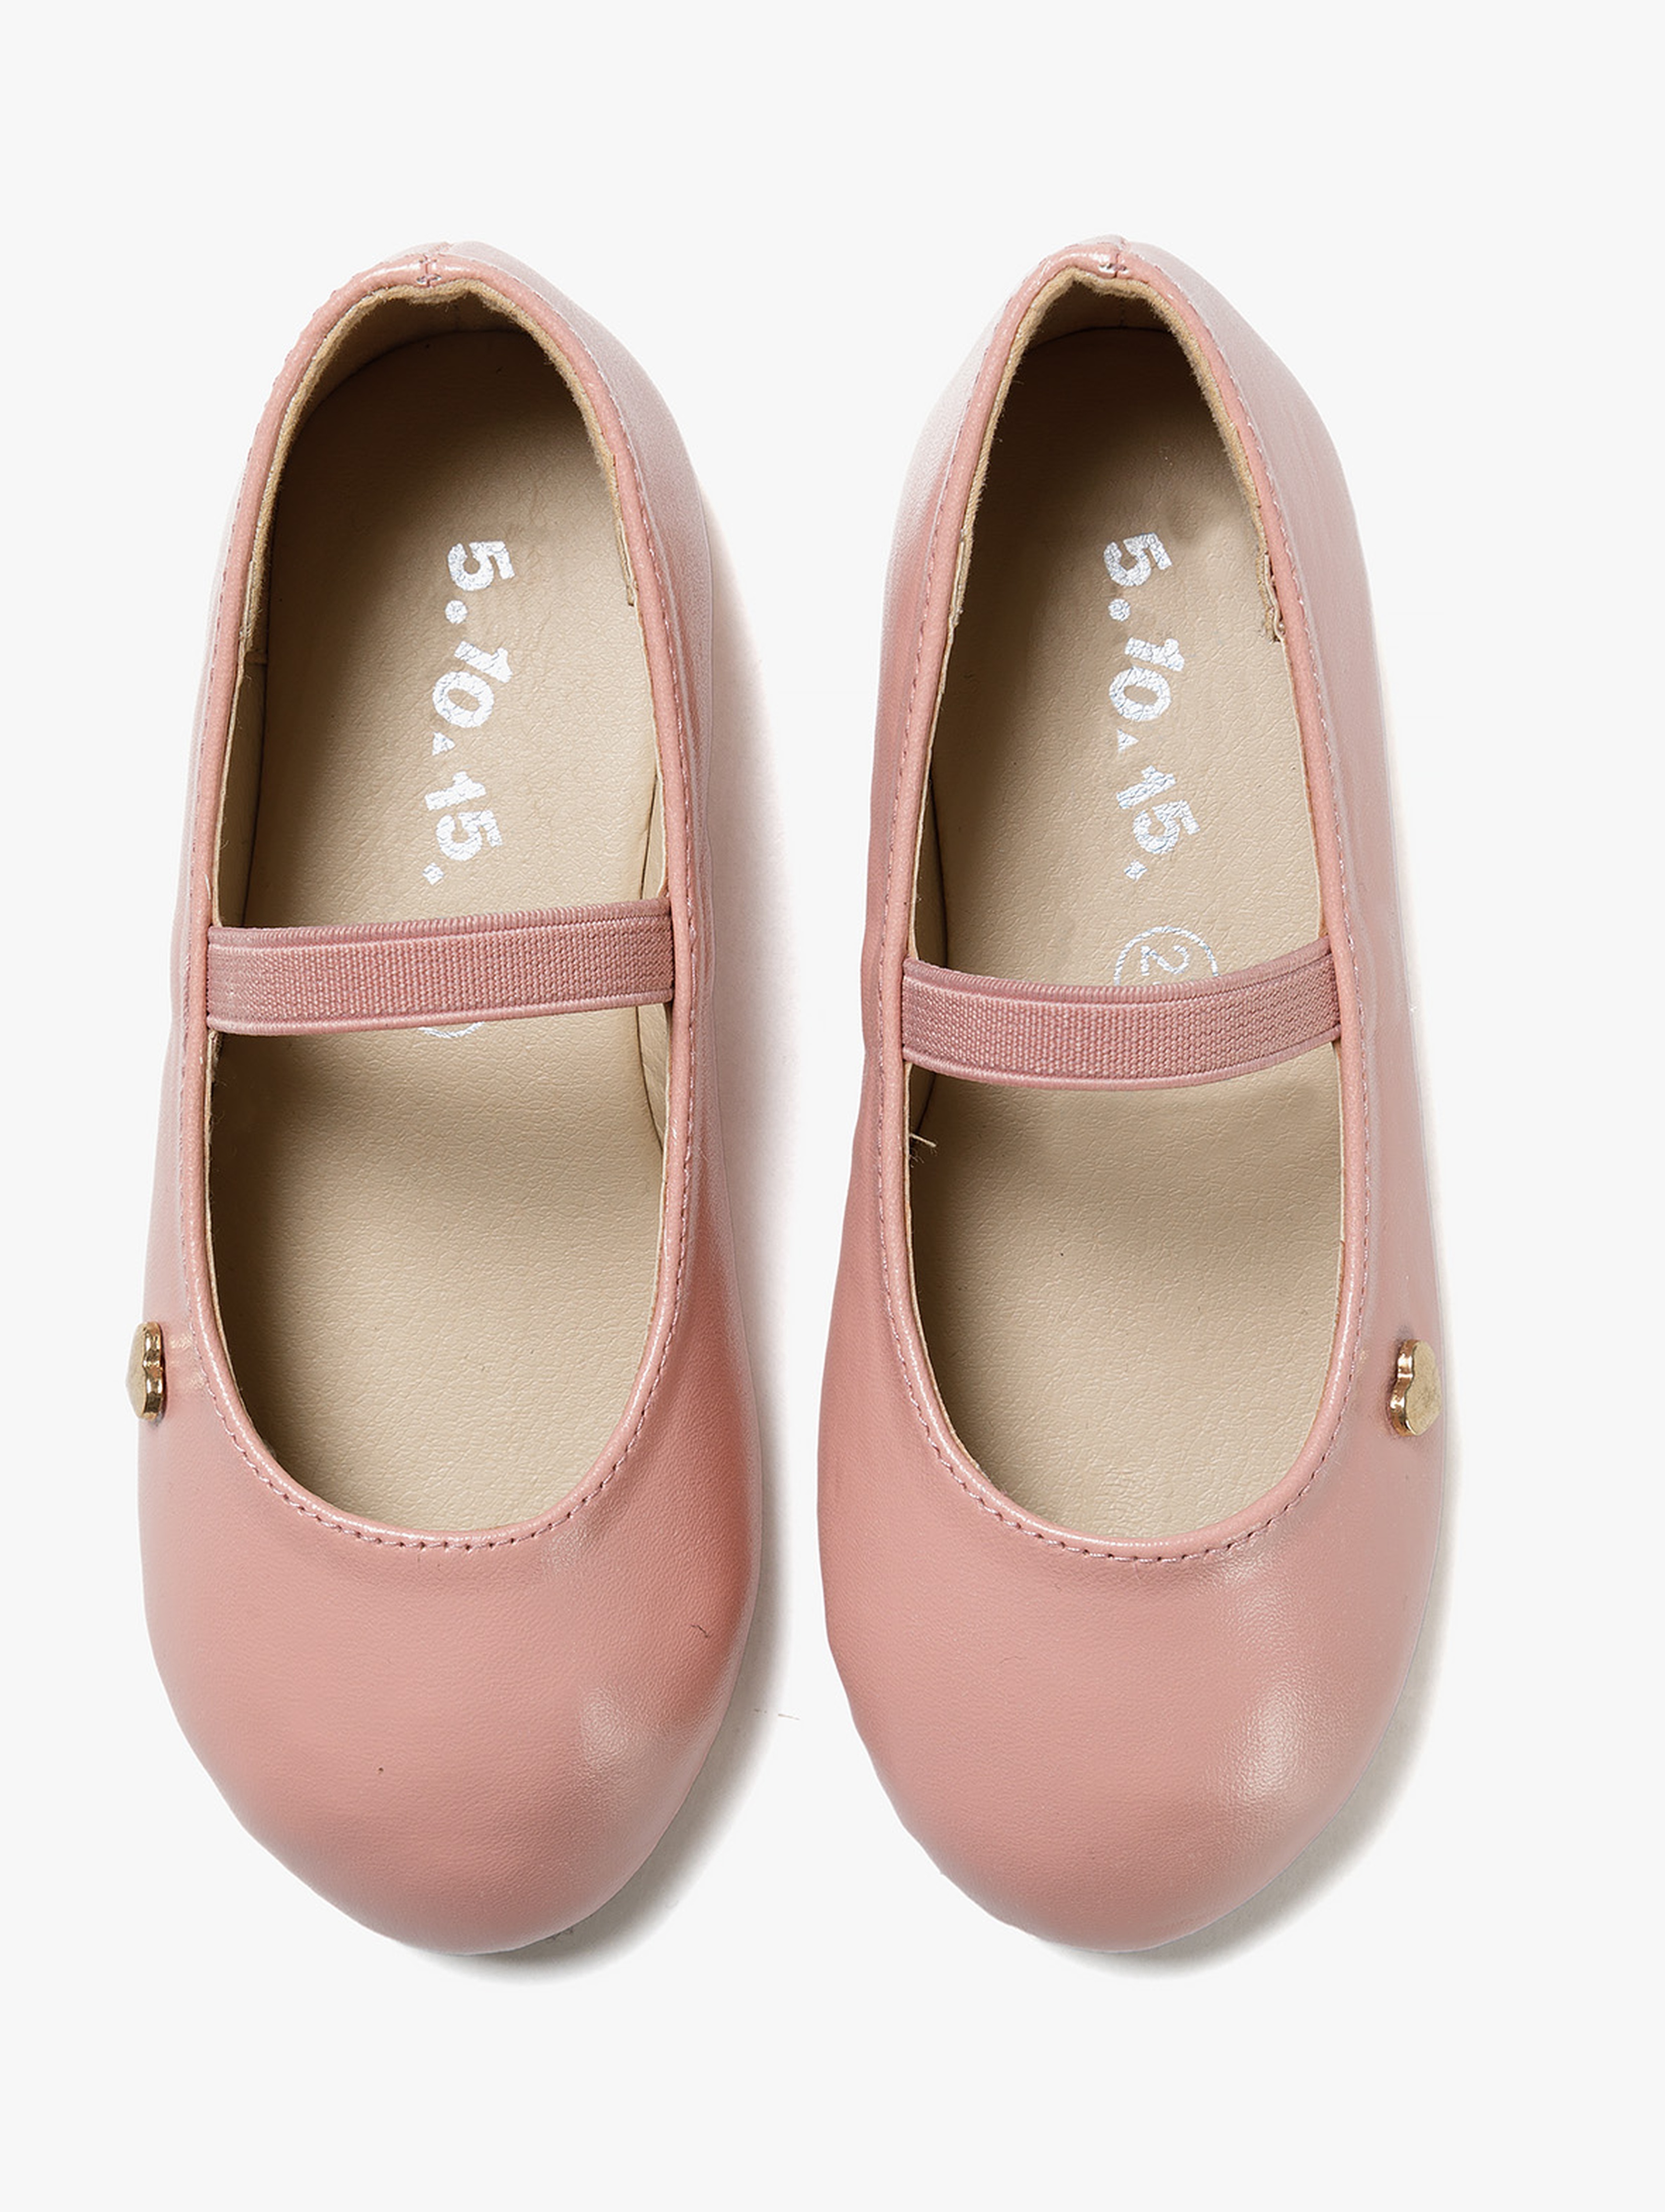 Buty baleriny dla dziewczynki - różowe